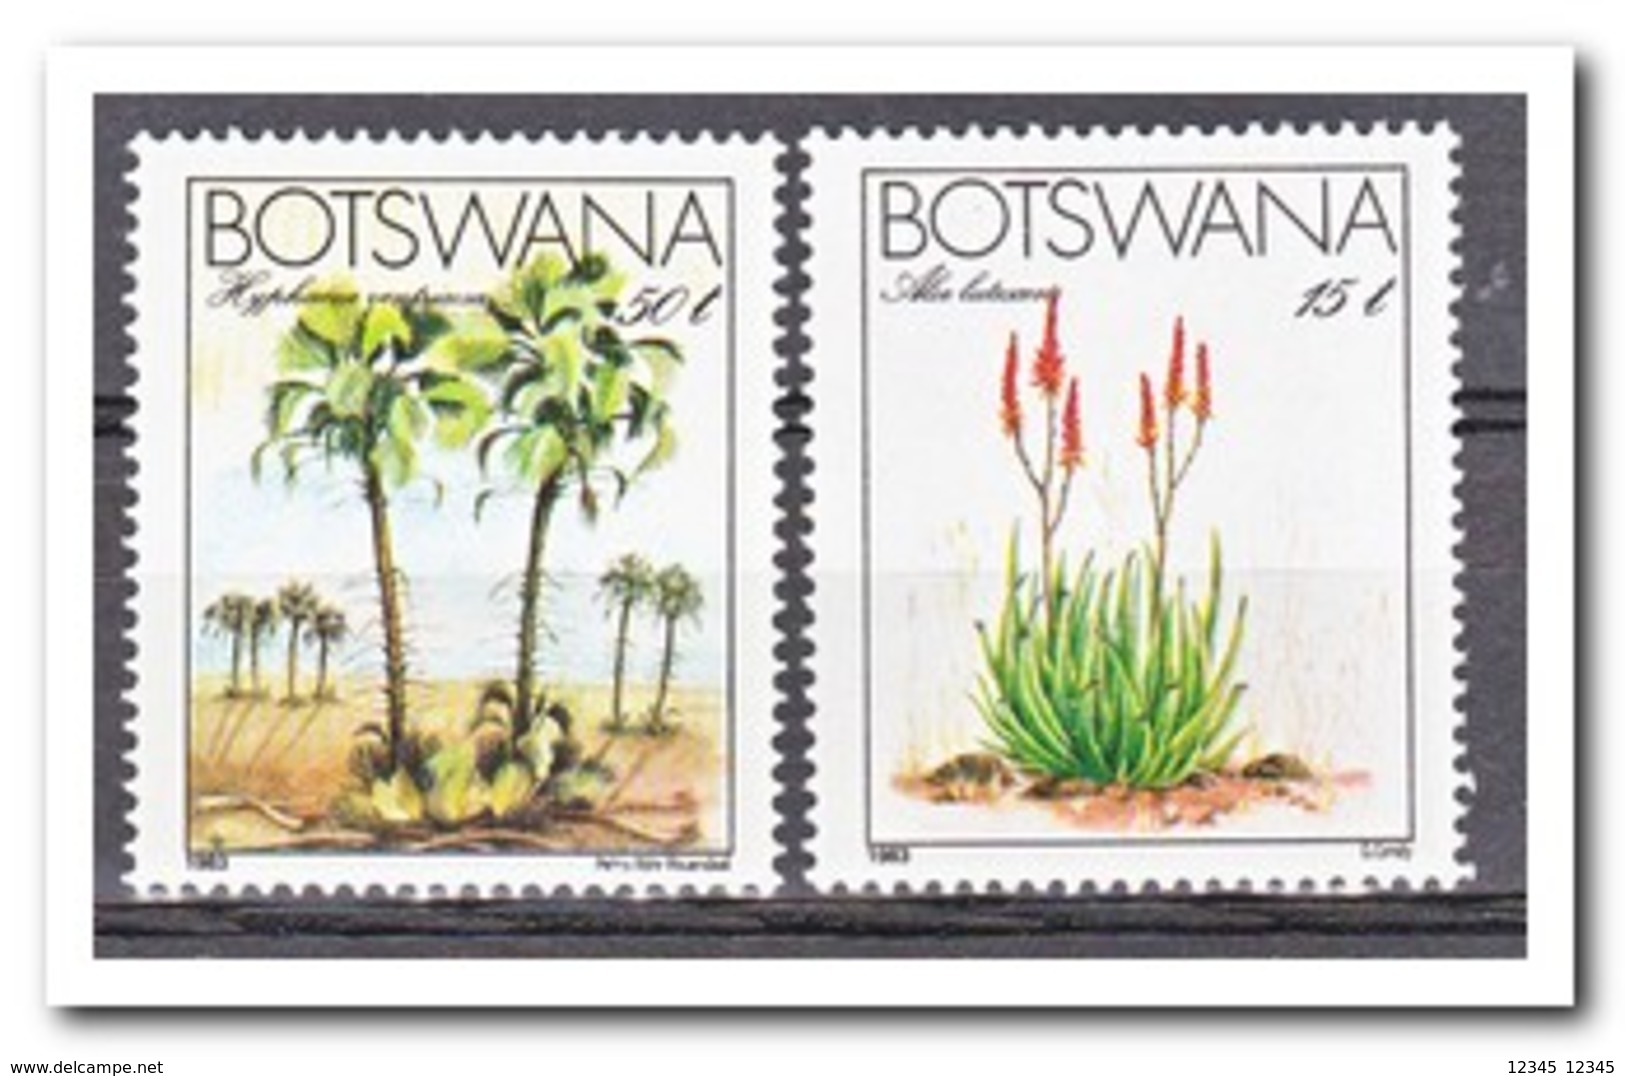 Botswana 1983, Postfris MNH, Trees, Plants - Botswana (1966-...)